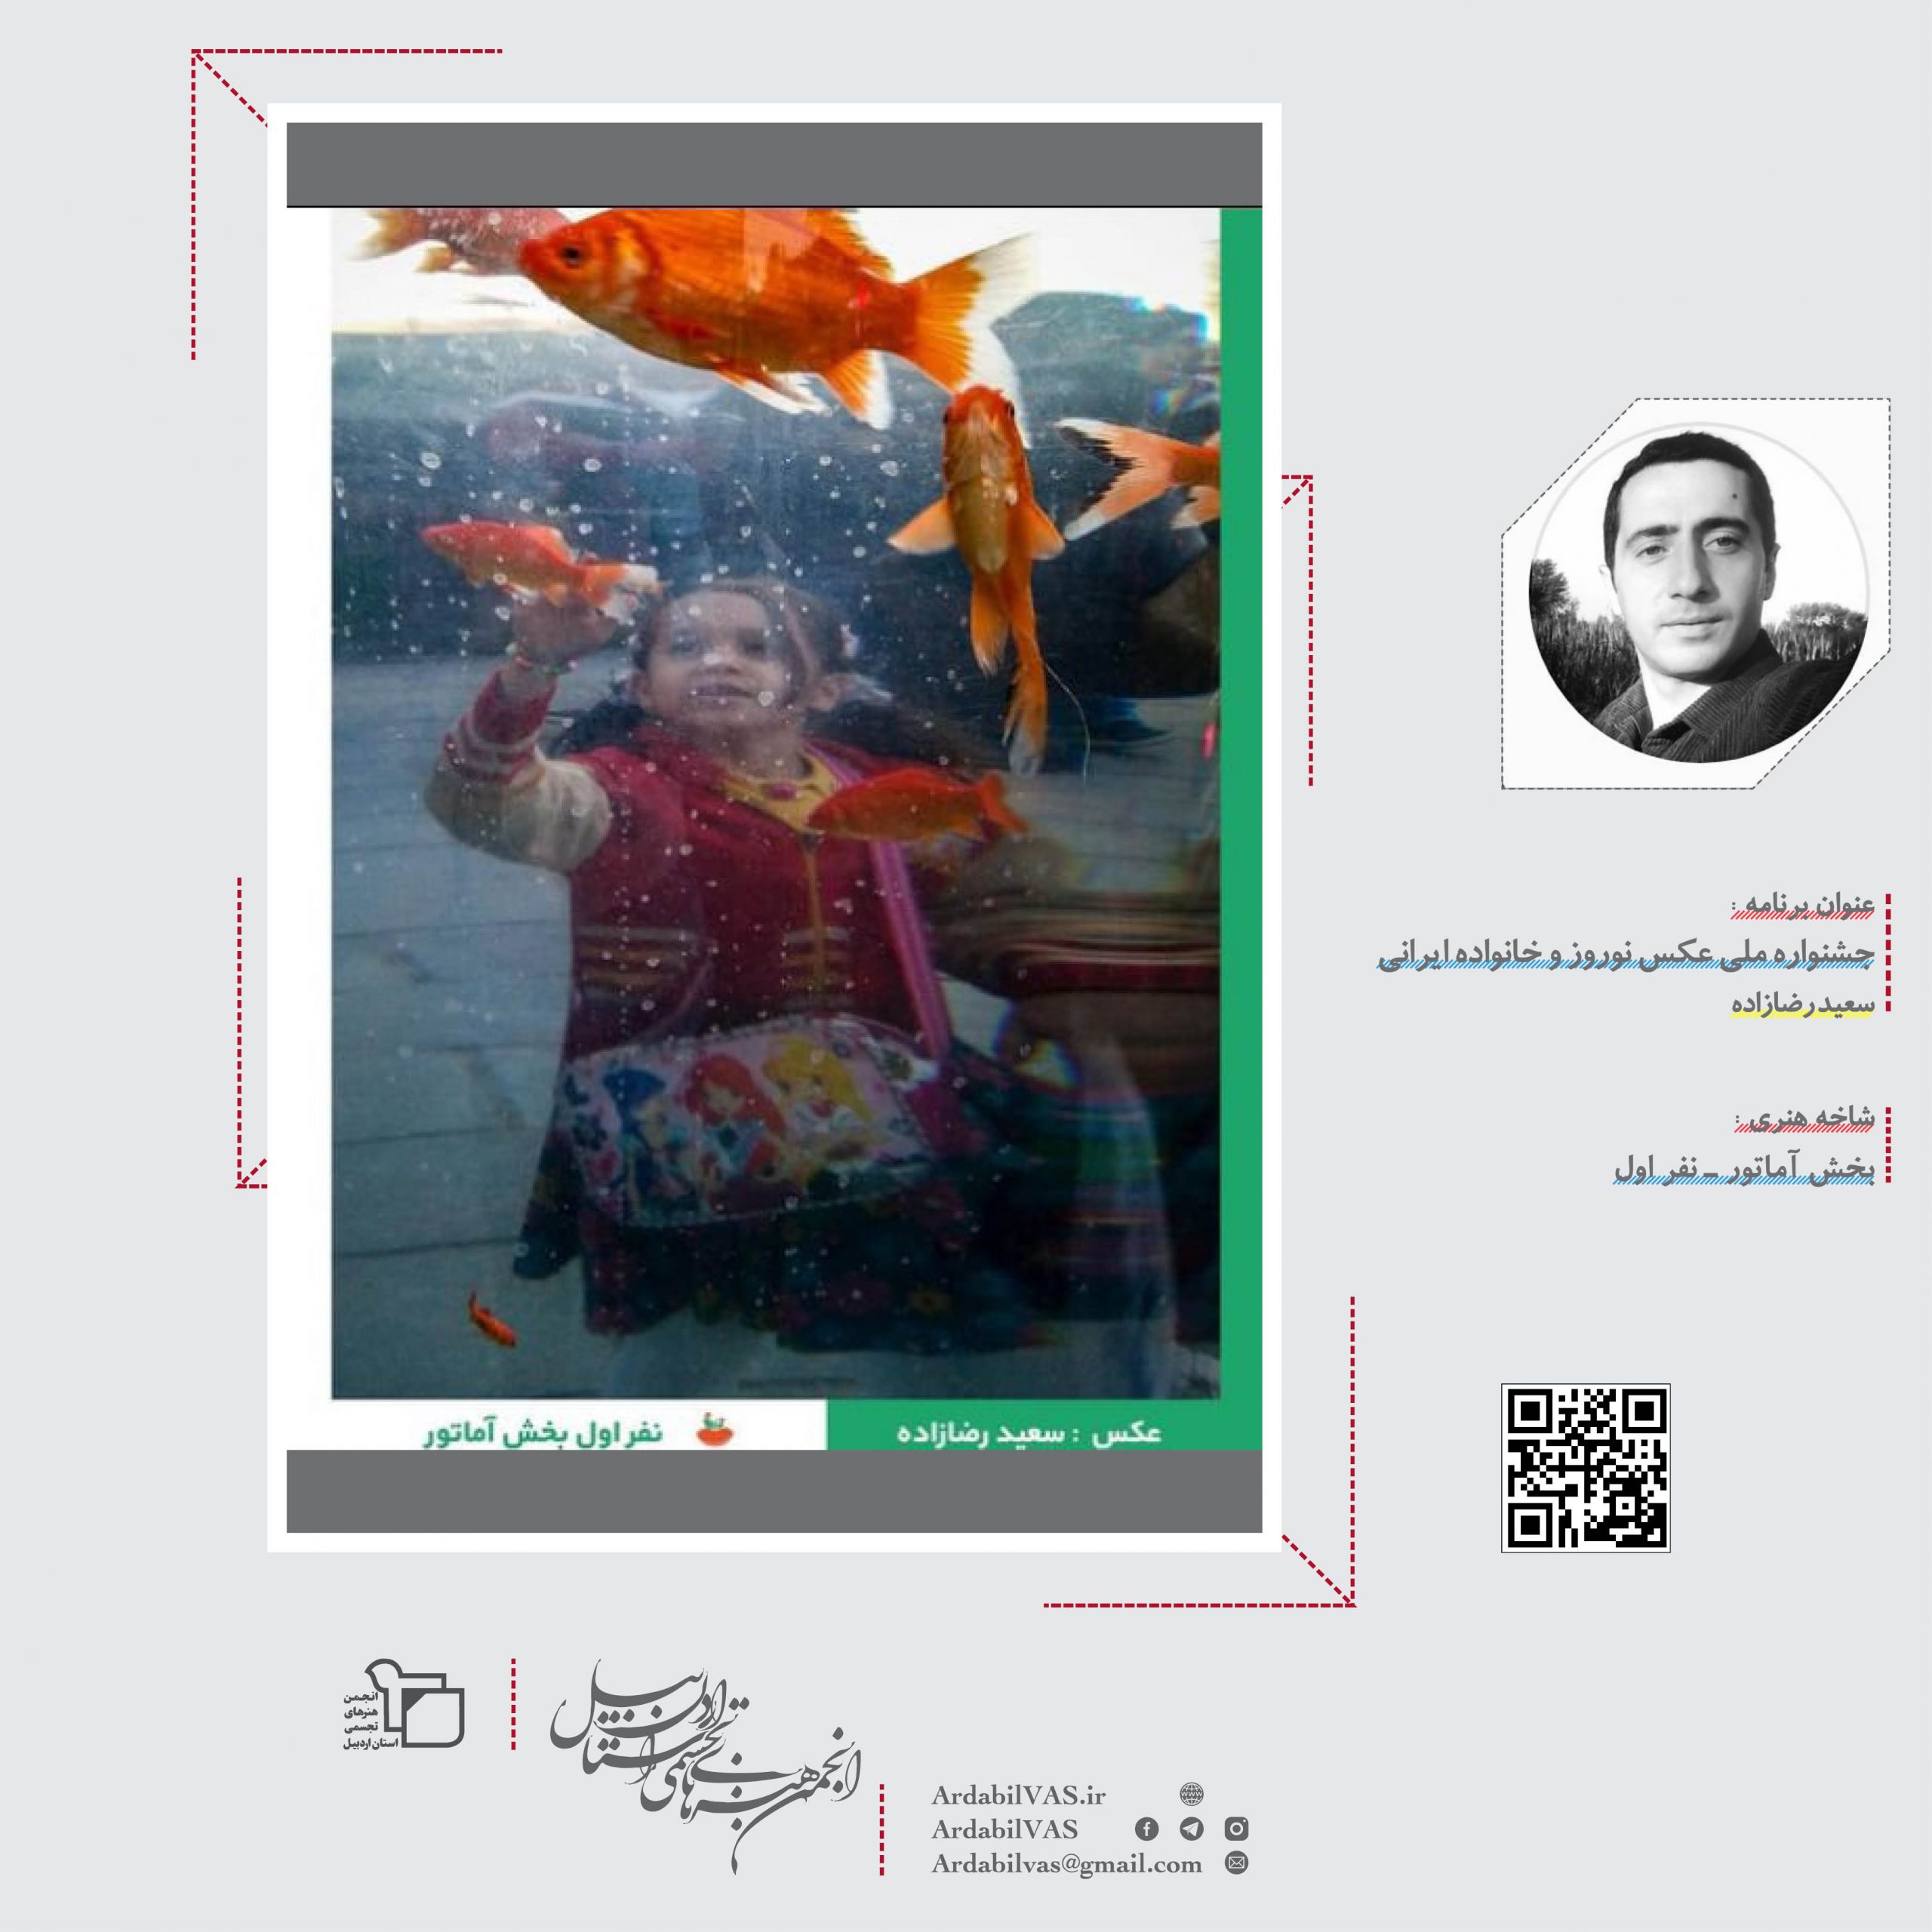 عکاسان اردبیل در اولین دوره جشنواره ملی عکس نوروز و خانواده ایرانی | انجمن هنرهای تجسمی استان اردبیل ـ جامعه تخصصی هنرهای تجسمی